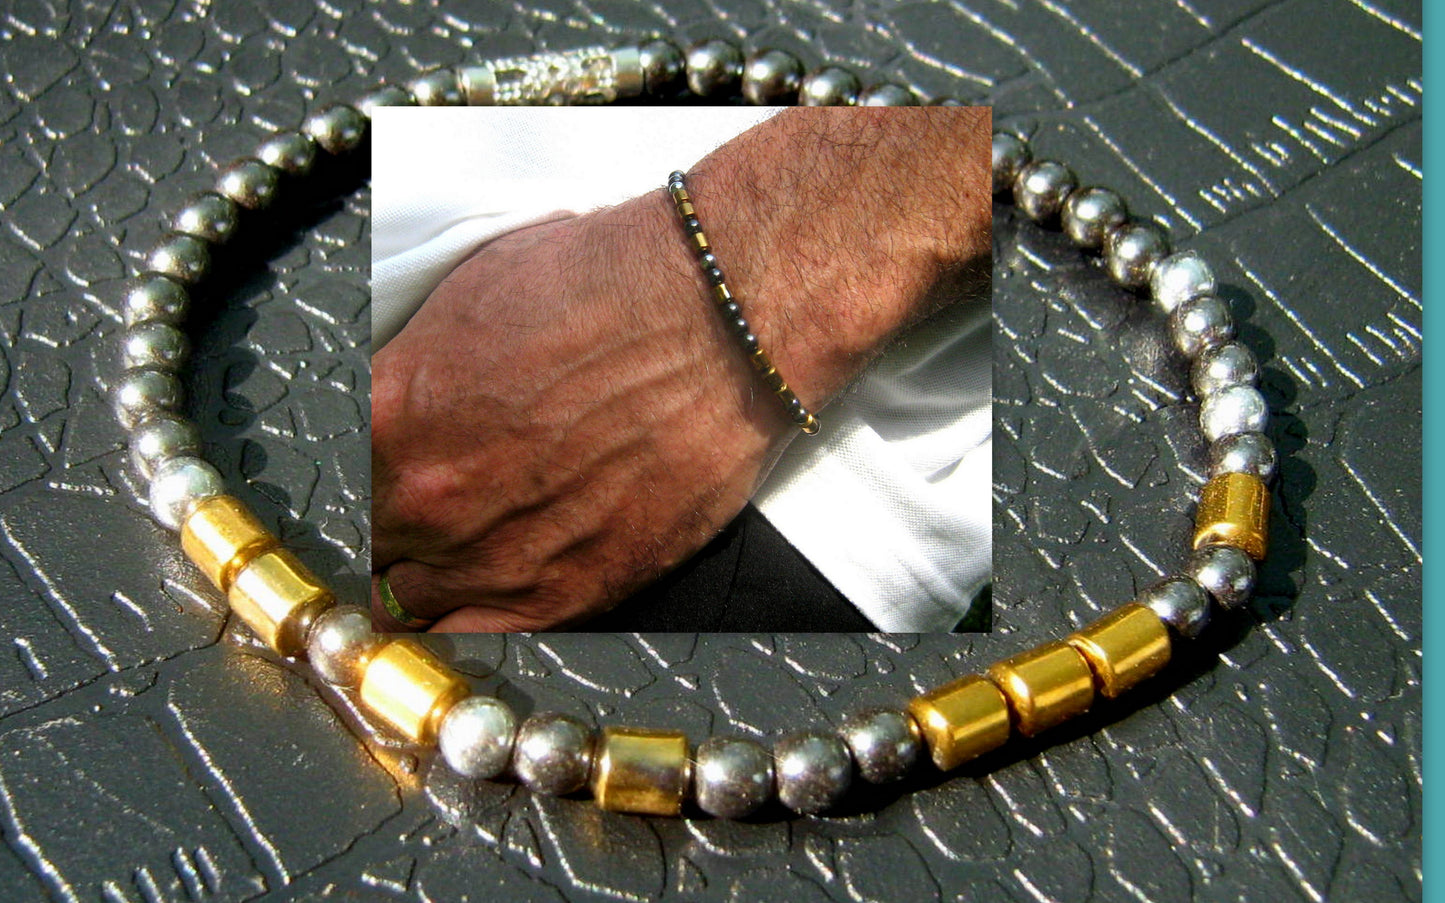 Custom MORSE CODE men/women Bracelet, I love you Secret Message, Healing protection precious stone Men handmade slim bracelet Men gift